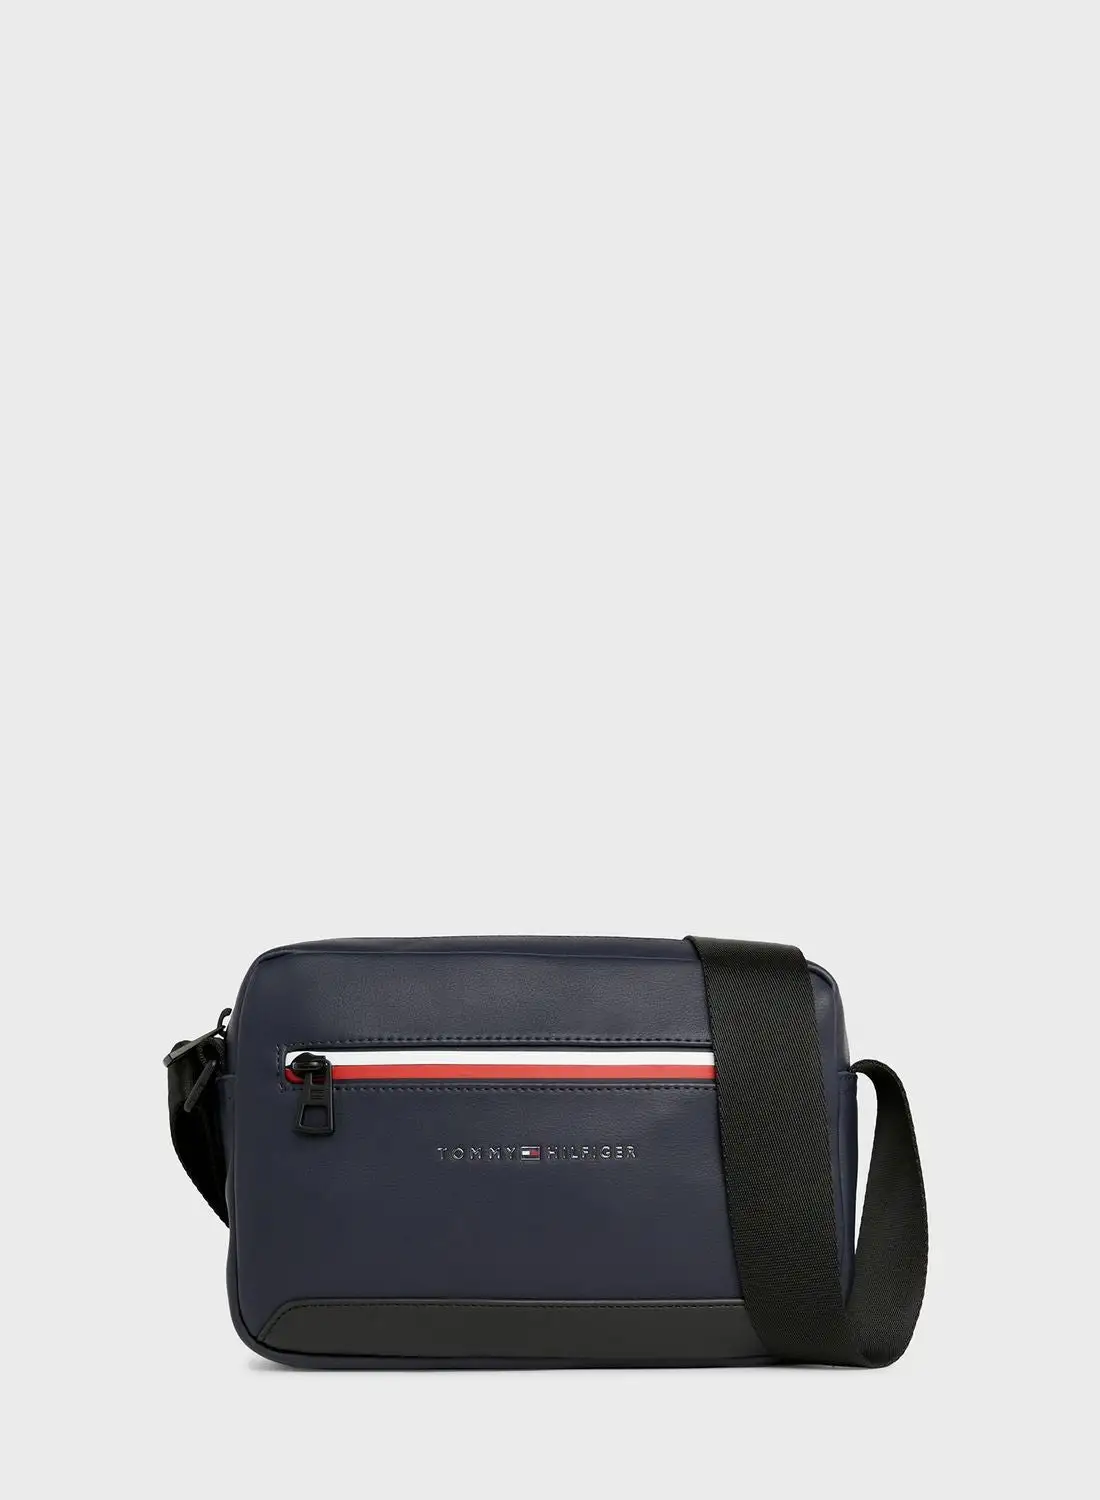 حقيبة ريبورتر بشعار شركة تومي هيلفيغر